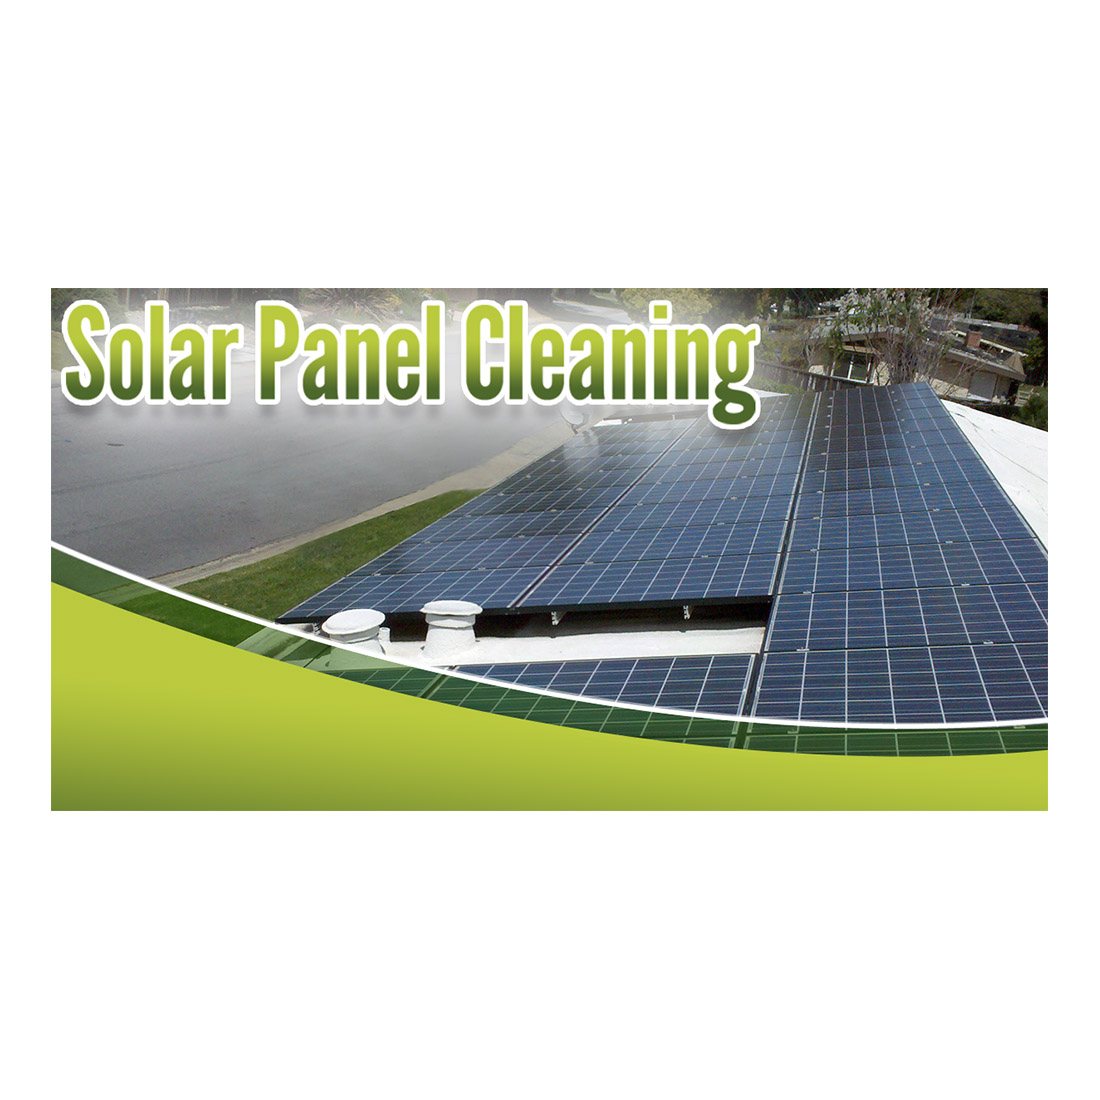 Solar Panel Design Suite - Facebook Ad